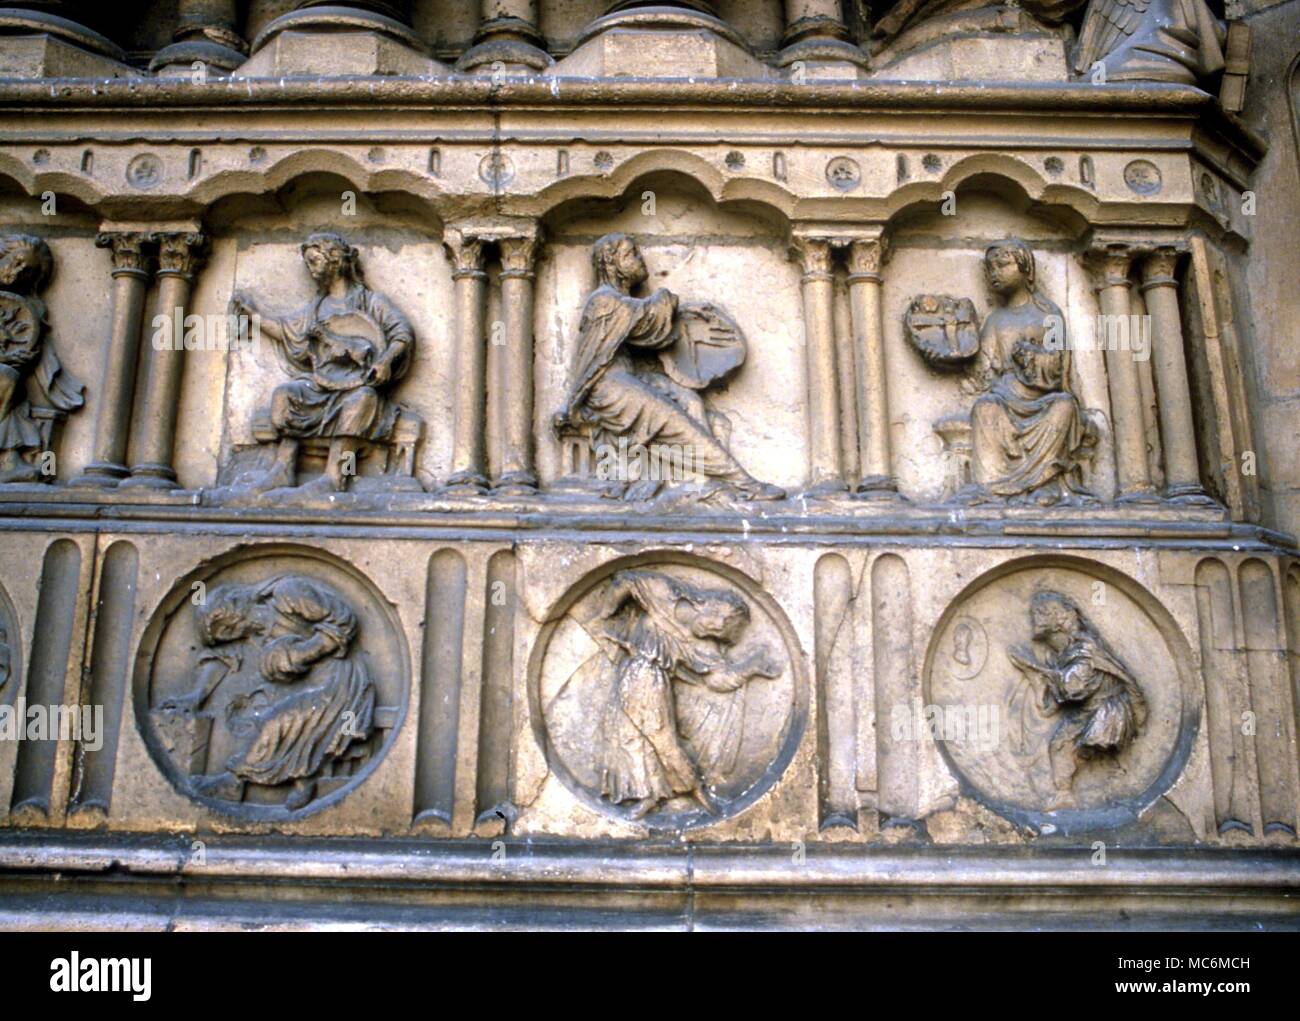 Alchemie - SYMBOLE DER PROZESSE. Sechs alchemistische Figuren an der Fassade der Kathedrale Notre Dame, Paris, die Symbole sind auf die Schirme von den Frauen gehalten Stockfoto